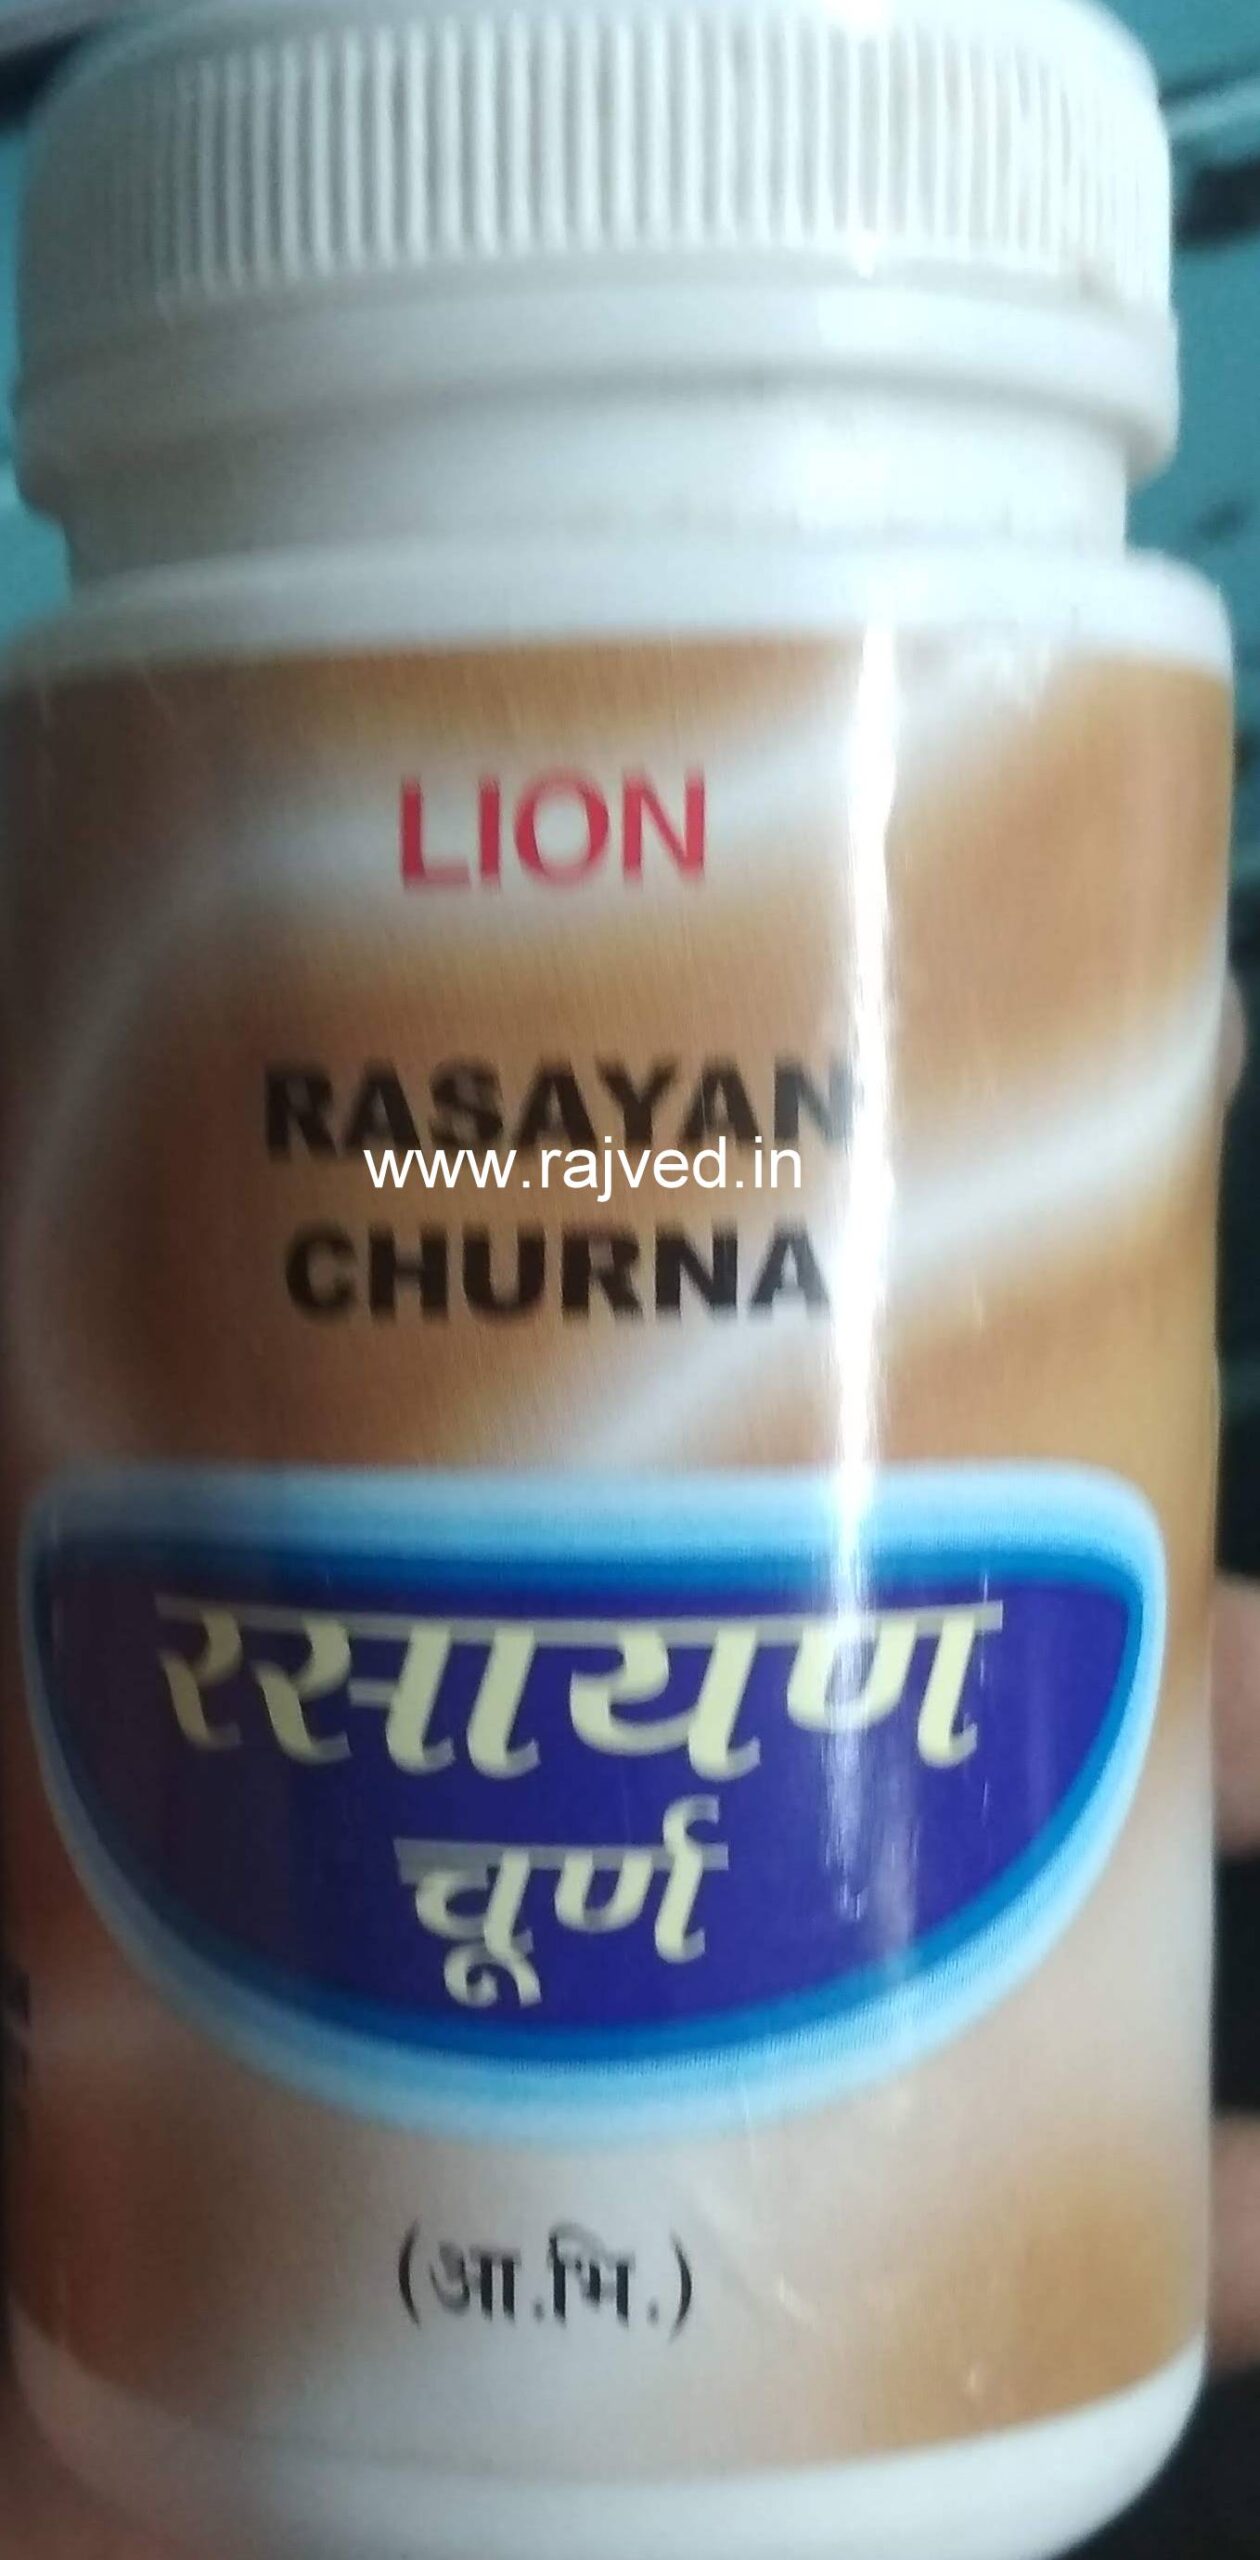 rasayan churna 100 gram lion